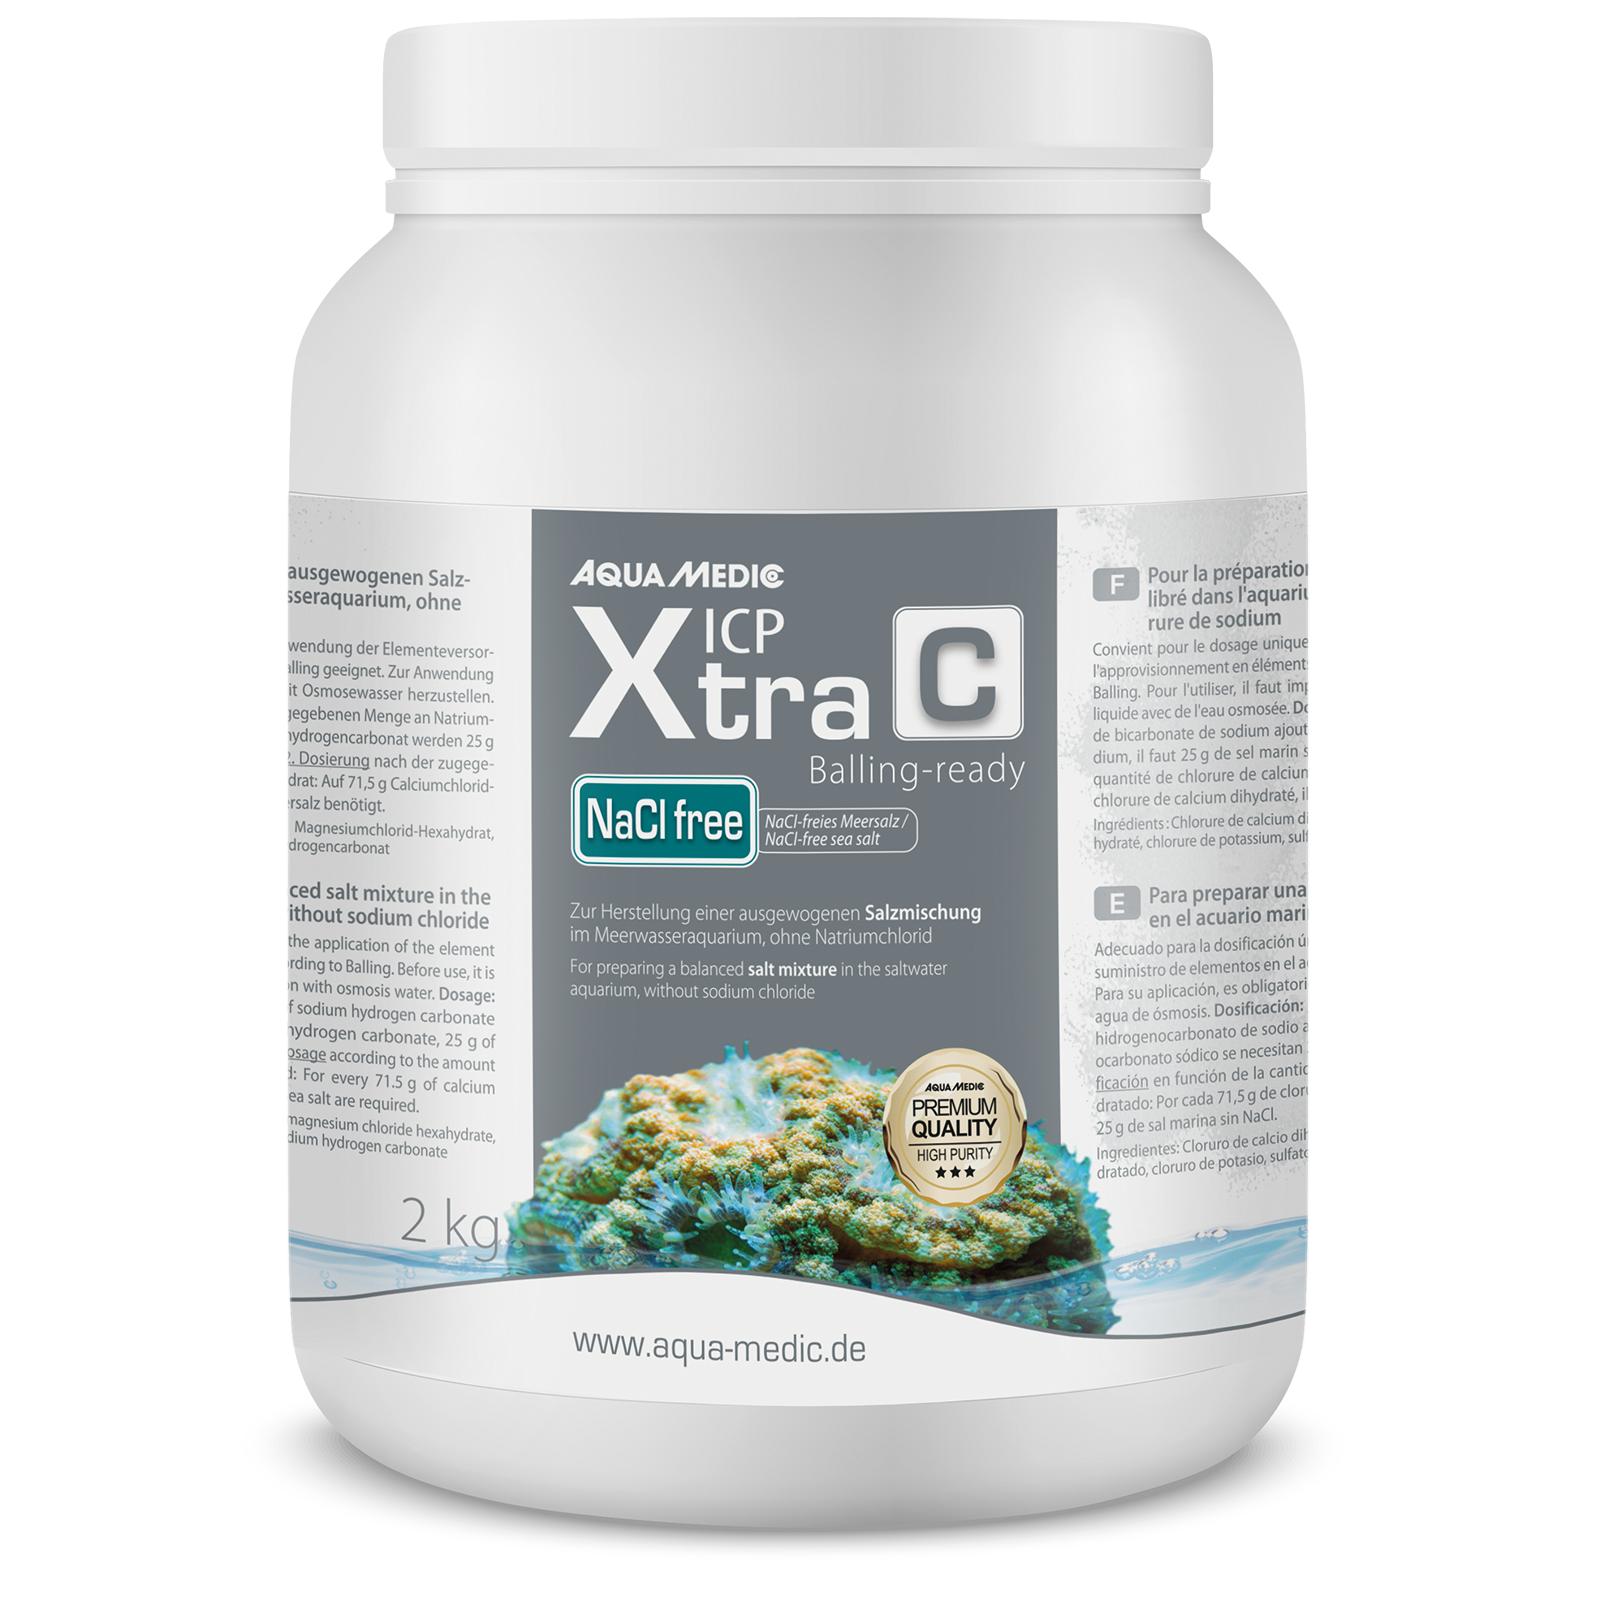 ICP Xtra  C - Zur Herstellung einer ausgewogenen Salzmischung im Meerwasseraquarium, ohne Natriumchlorid